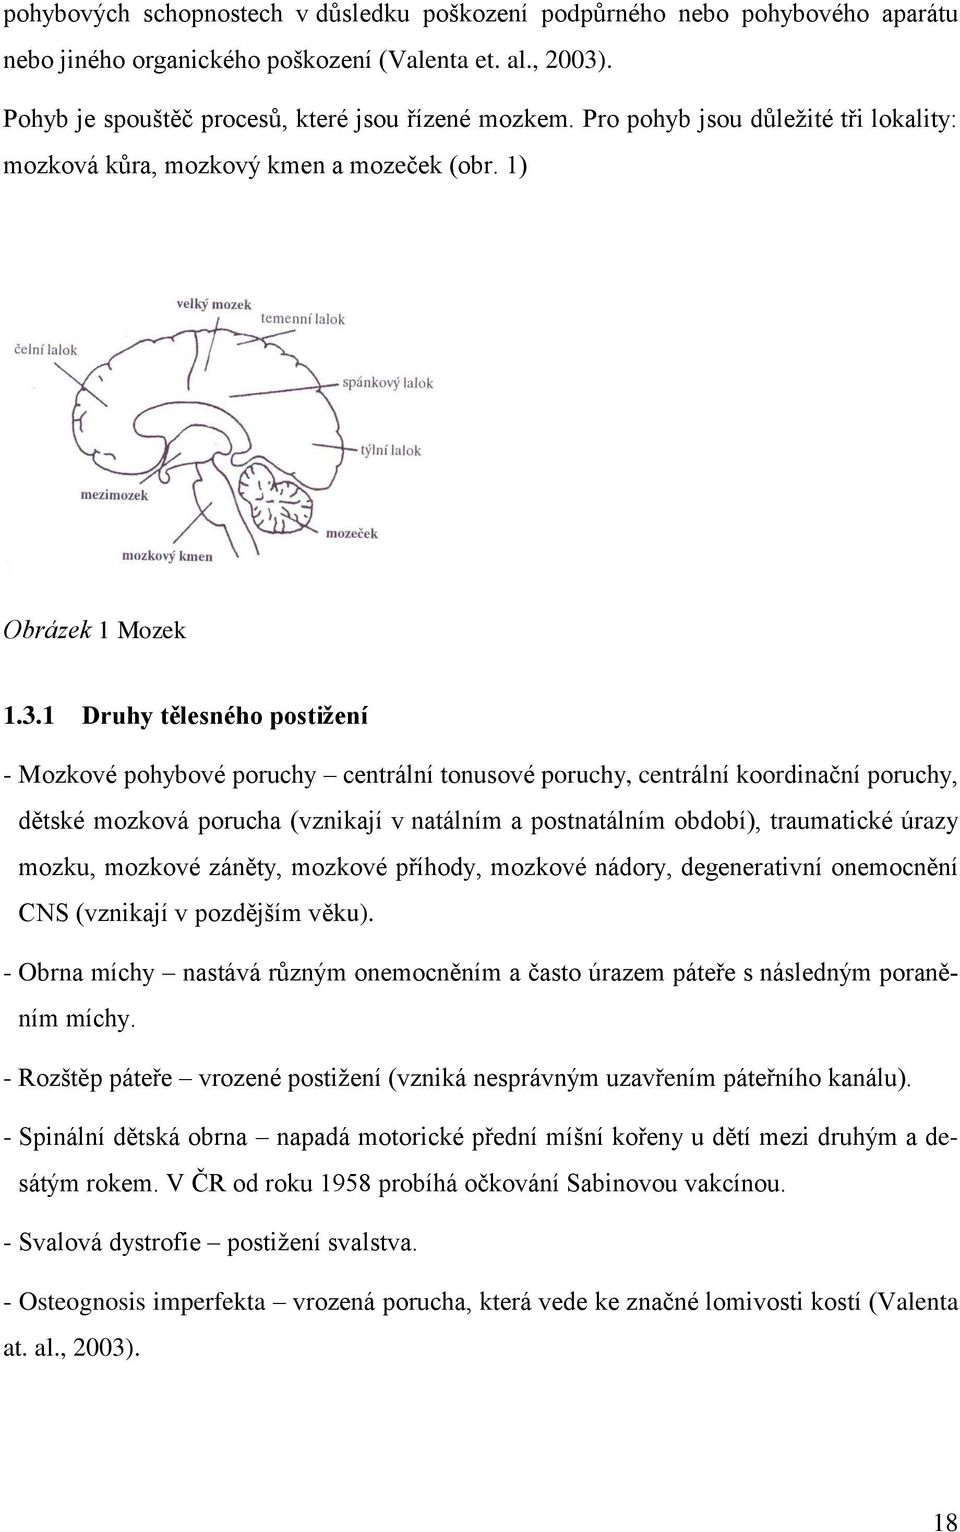 1 Druhy tělesného postiţení - Mozkové pohybové poruchy centrální tonusové poruchy, centrální koordinační poruchy, dětské mozková porucha (vznikají v natálním a postnatálním období), traumatické úrazy